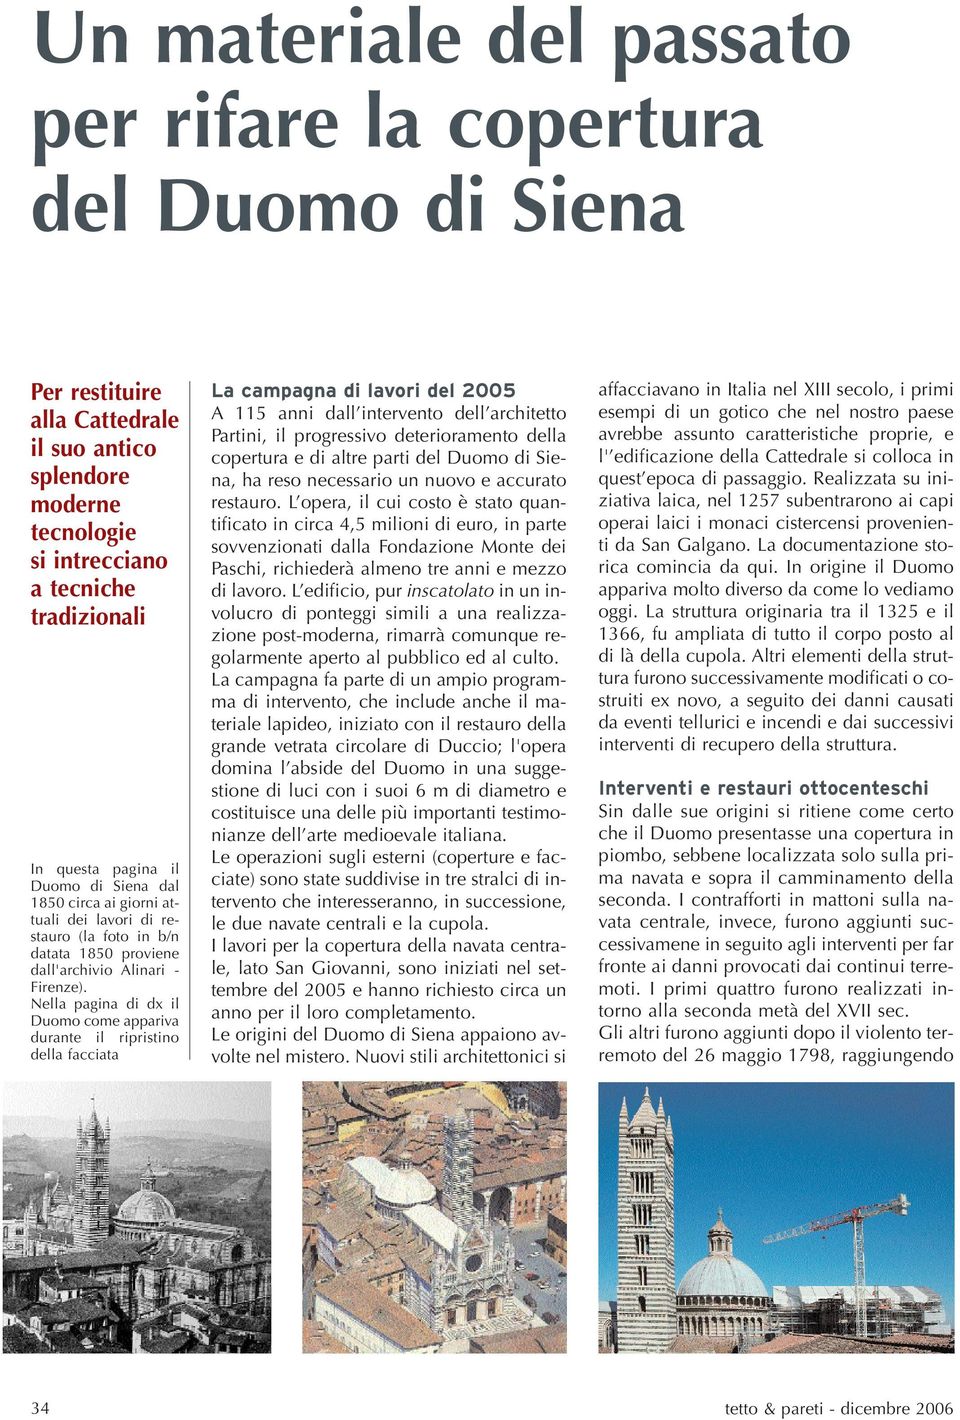 Nella pagina di dx il Duomo come appariva durante il ripristino della facciata La campagna di lavori del 2005 A 115 anni dall intervento dell architetto Partini, il progressivo deterioramento della